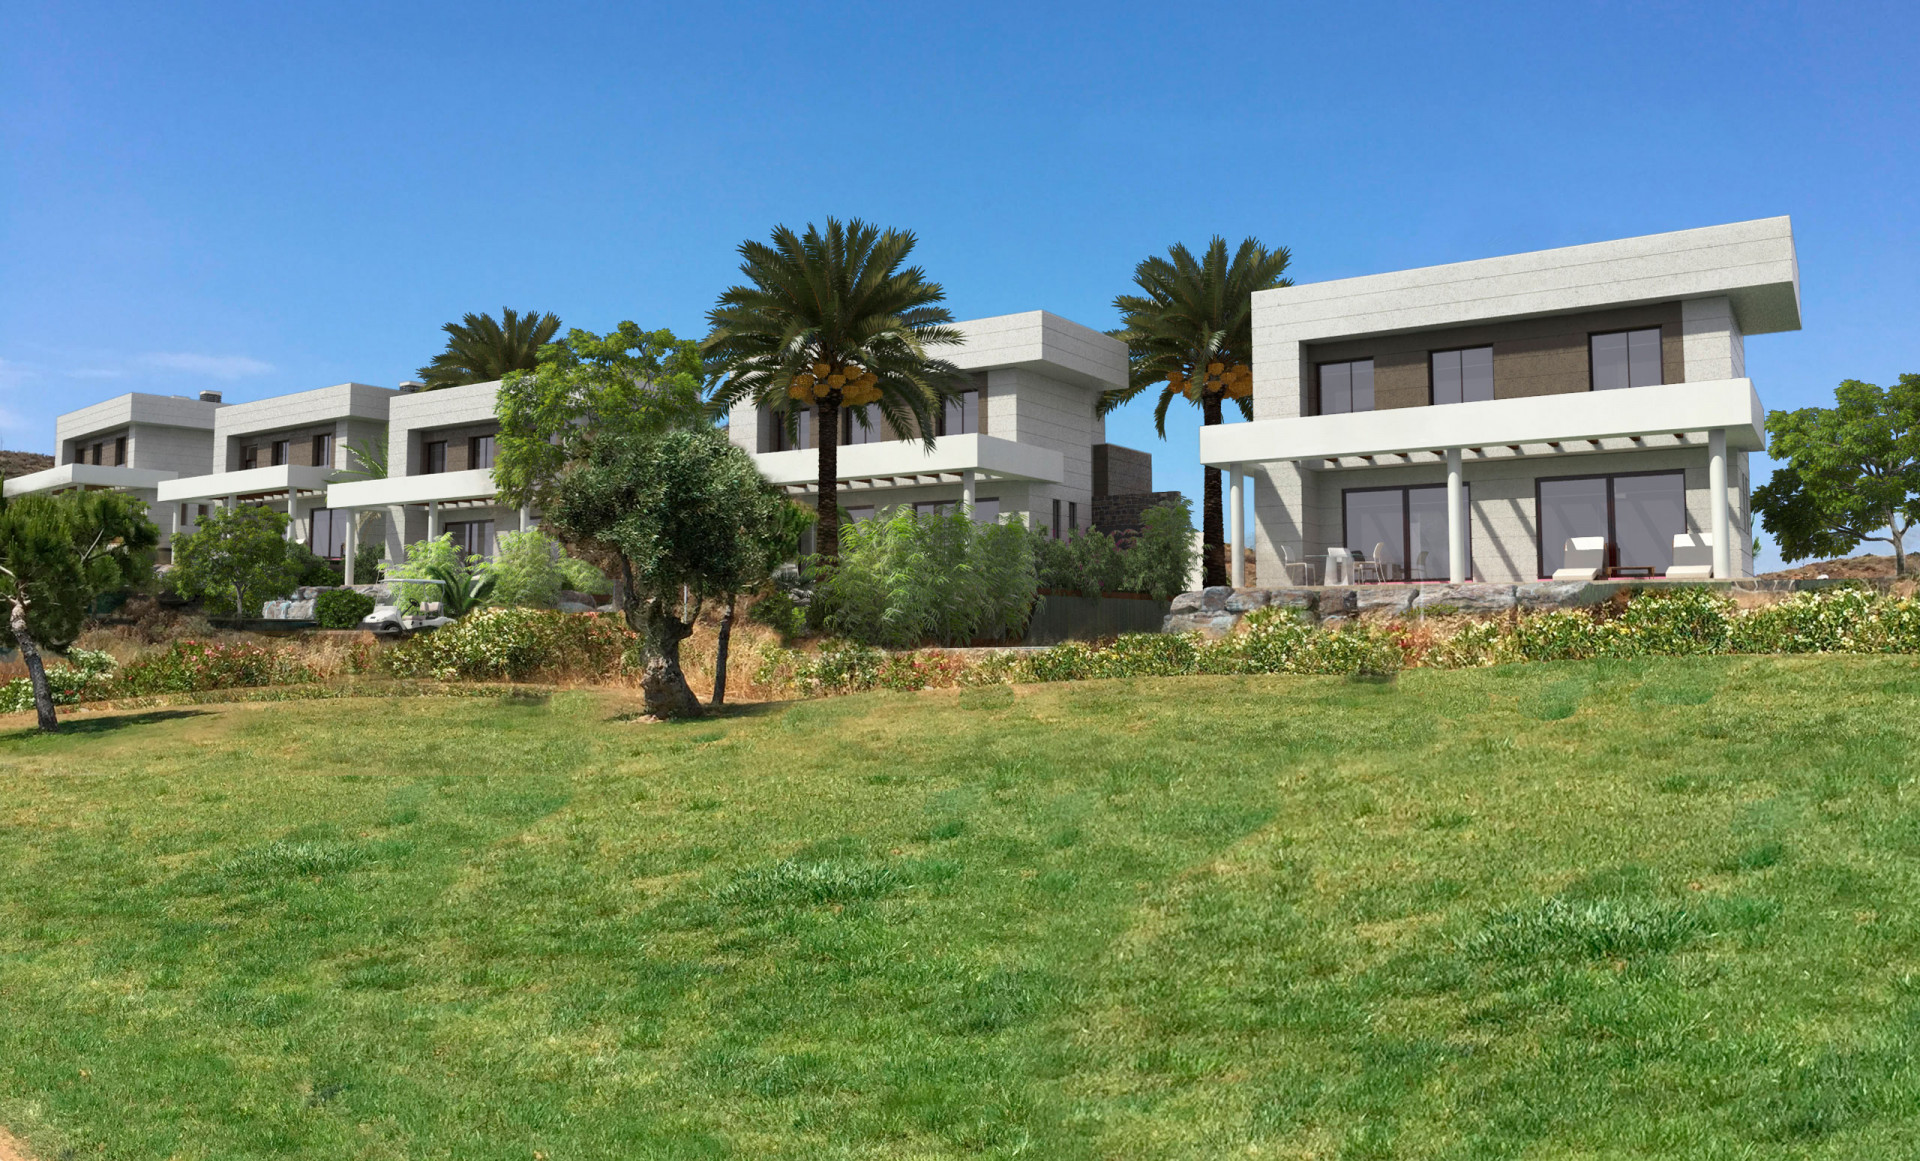 La Quinta de Cerrado: Exclusive frontline golf residential development in Mijas Costa. | Image 8